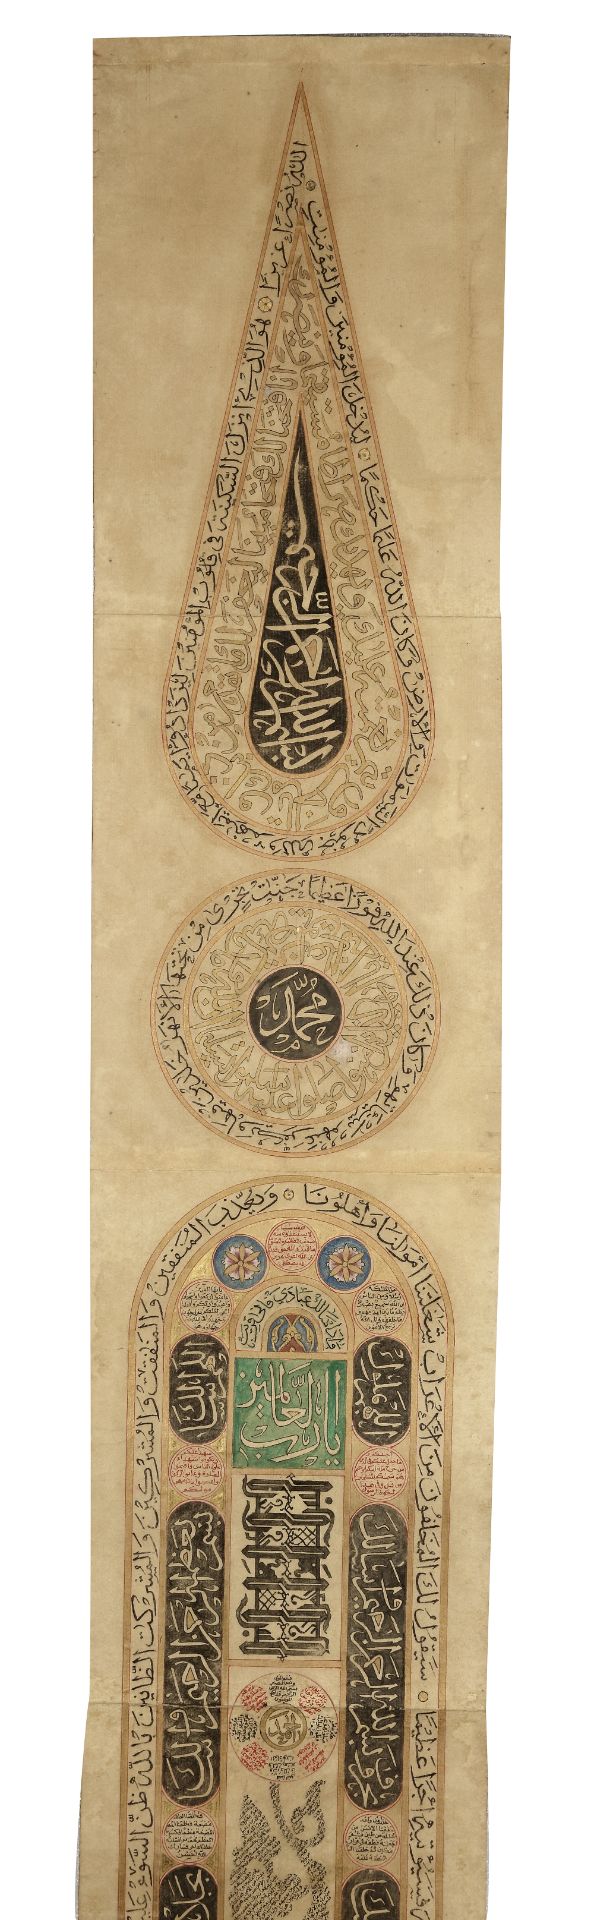 AN OTTOMAN ILLUMINATED PRAYER SCROLL, OTTOMAN TURKEY, 18TH CENTURY - Image 5 of 8